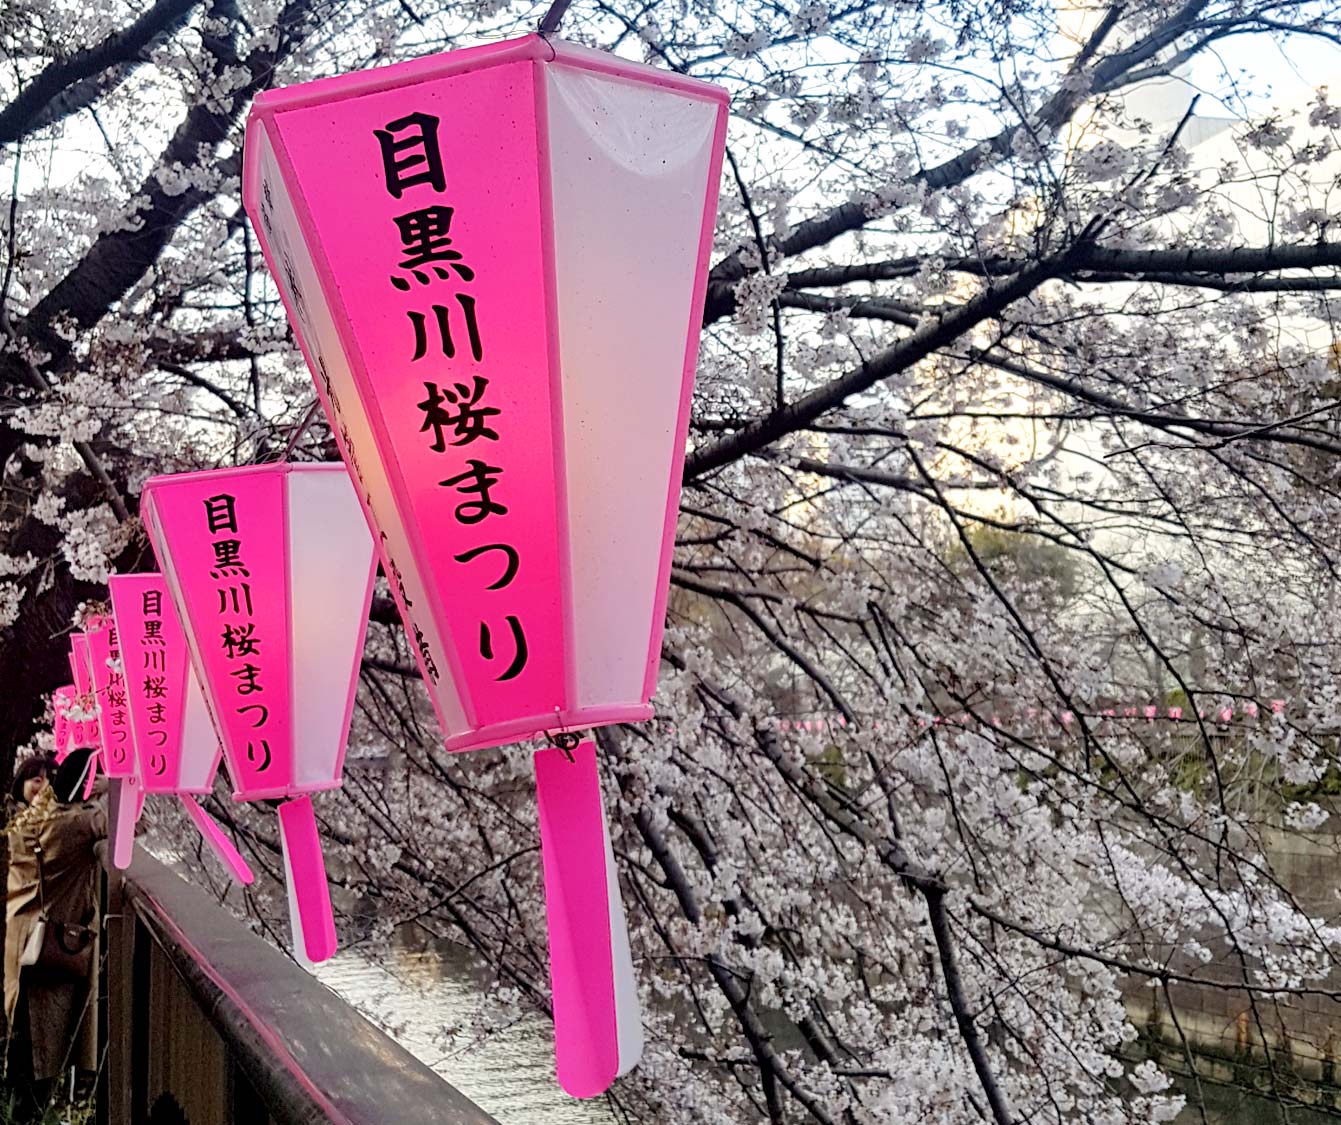 Meguro river park, Tokyo, Sakura, Cherry blossom